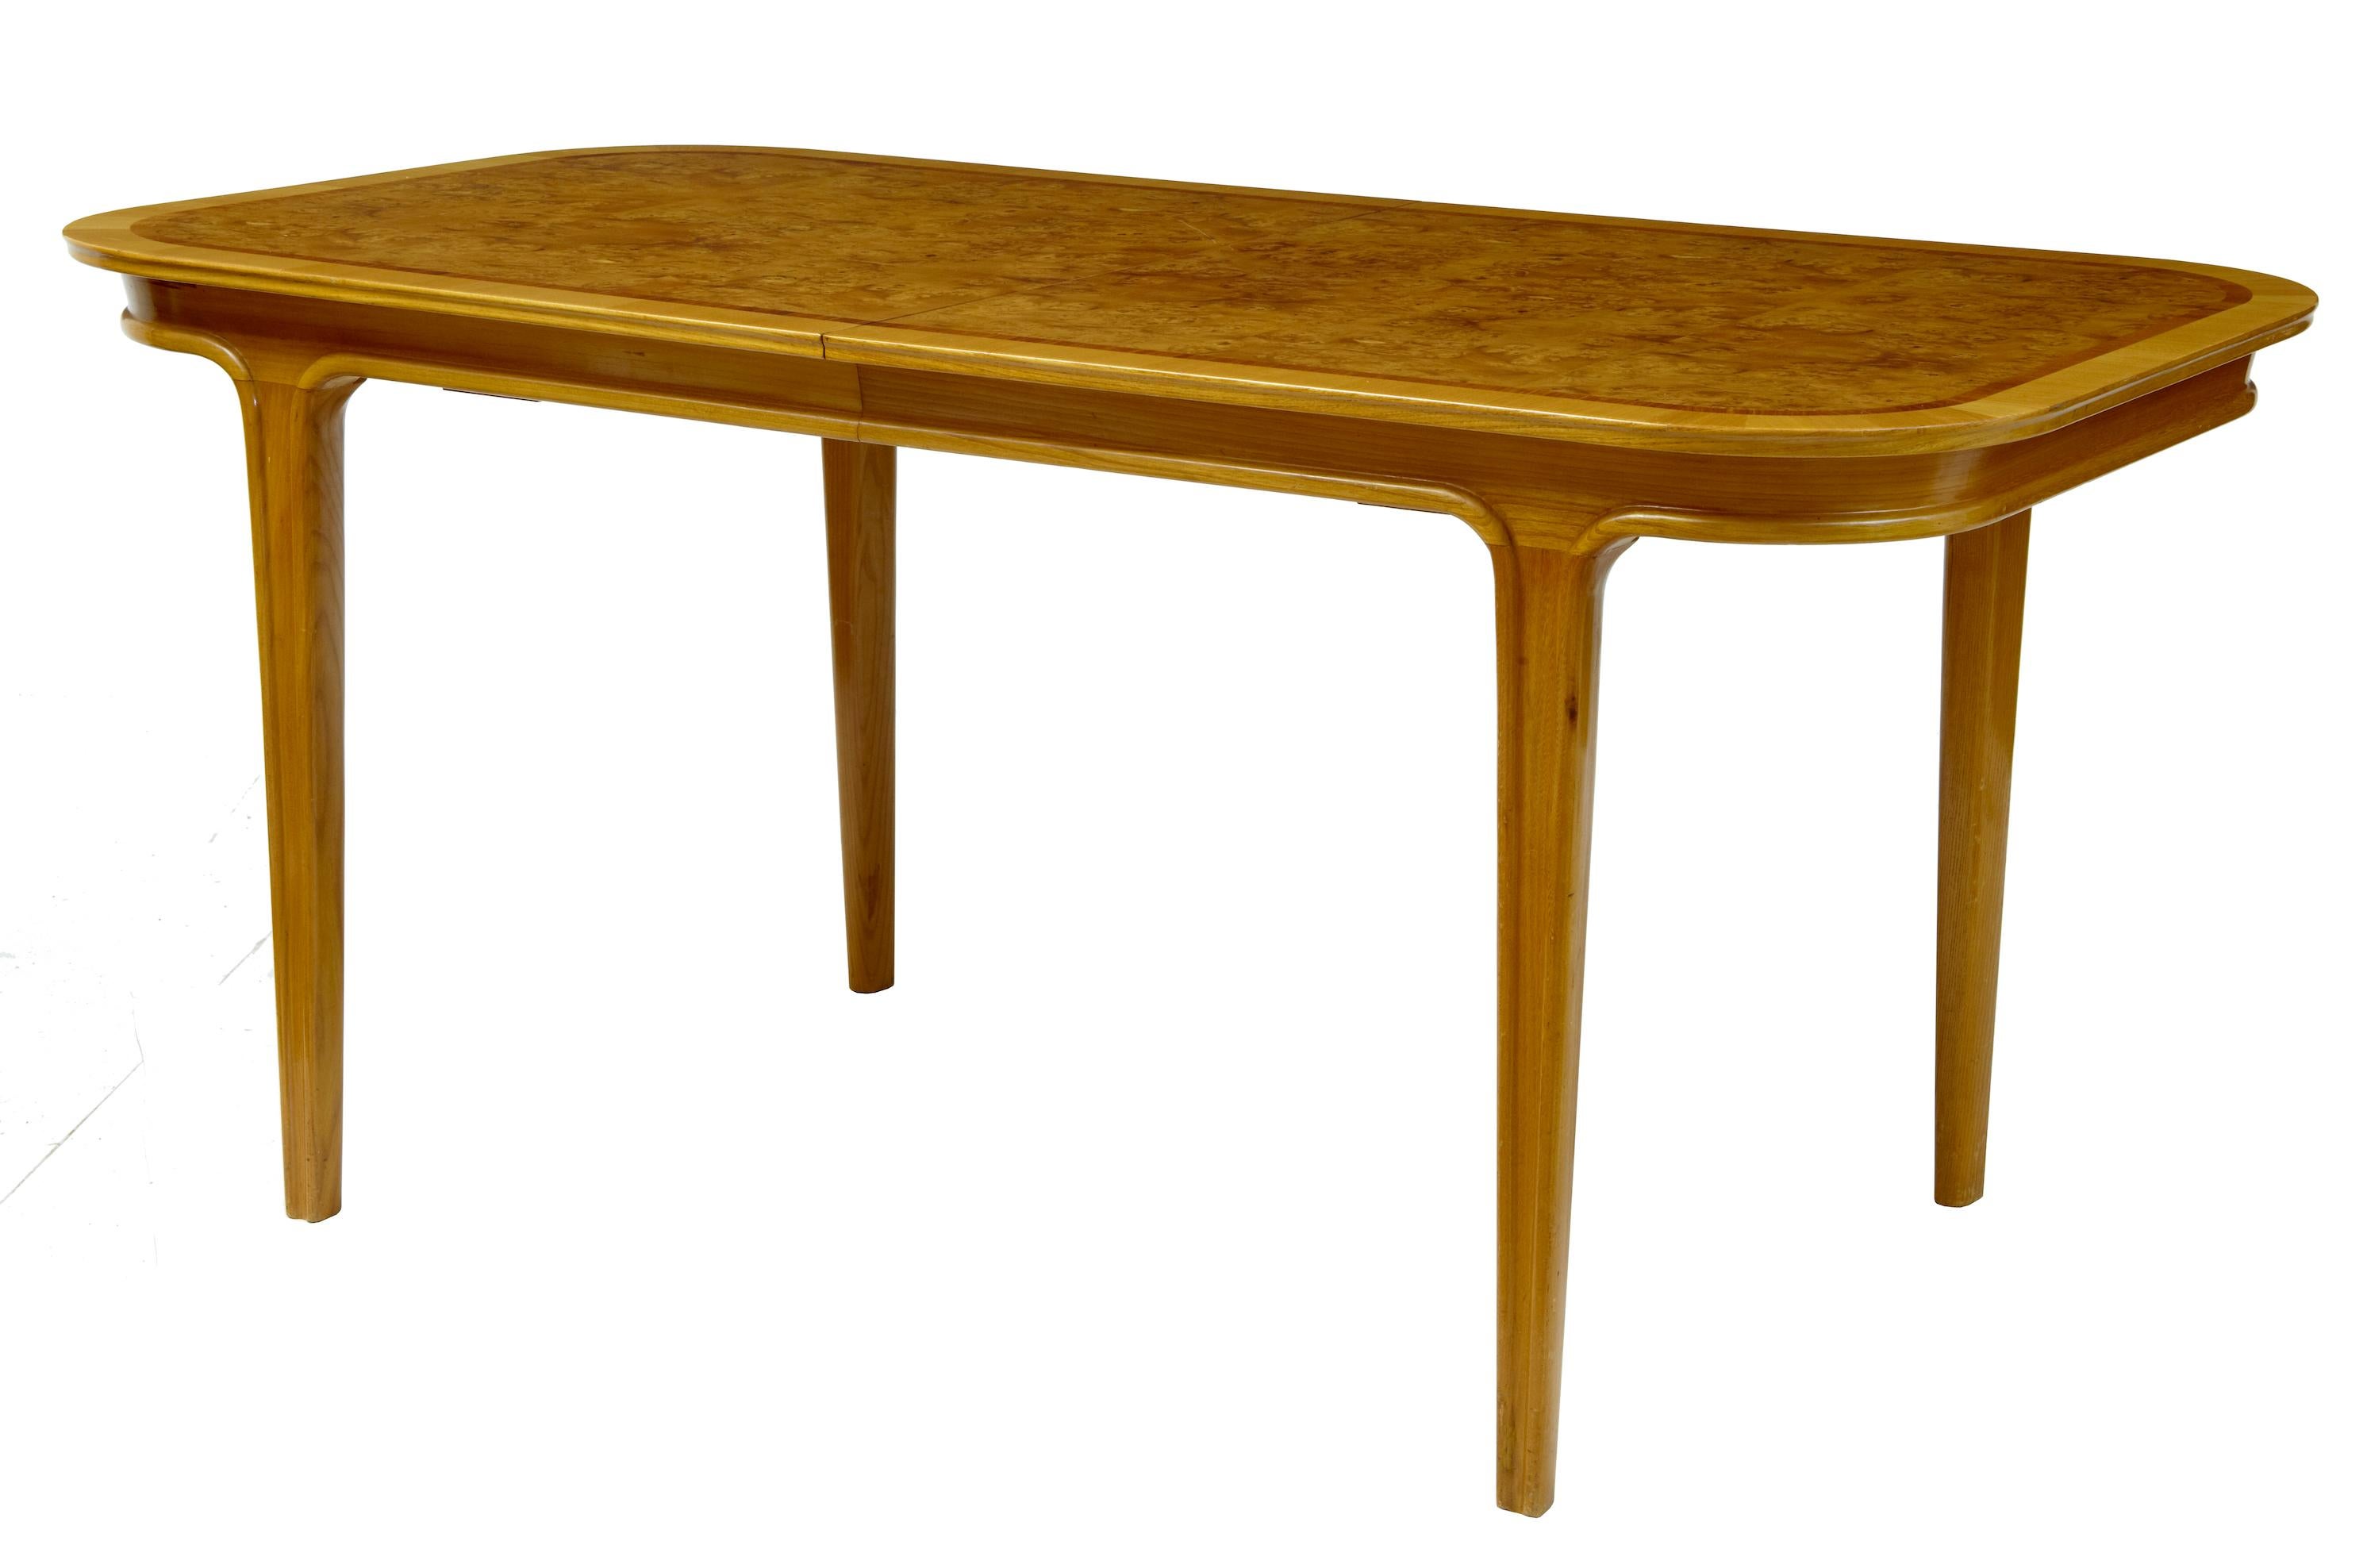 Stilvolles Stück Design des 20. Jahrhunderts, um 1970.
Ausziehbarer Tisch und vier Stühle von guter Qualität.
Platte aus Walnussfurnier mit Mahagoni und Buche mit Querstreifen.
Blätter lagern im geschlossenen Zustand im Tisch

Maße des